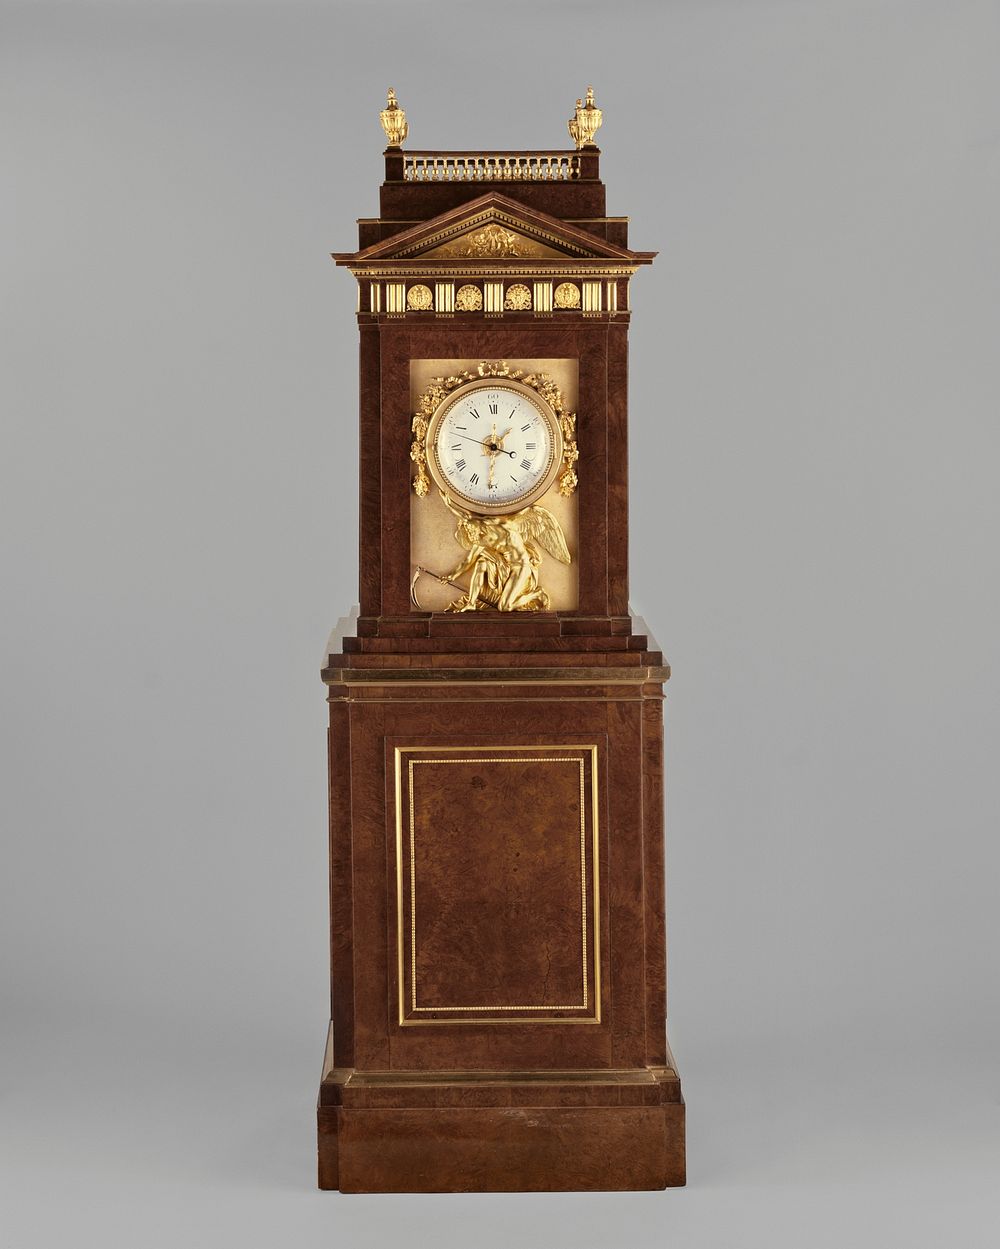 Long Case Musical Clock by David Roentgen, François Rémond, Peter Kinzing and Johann Wilhelm Weyl